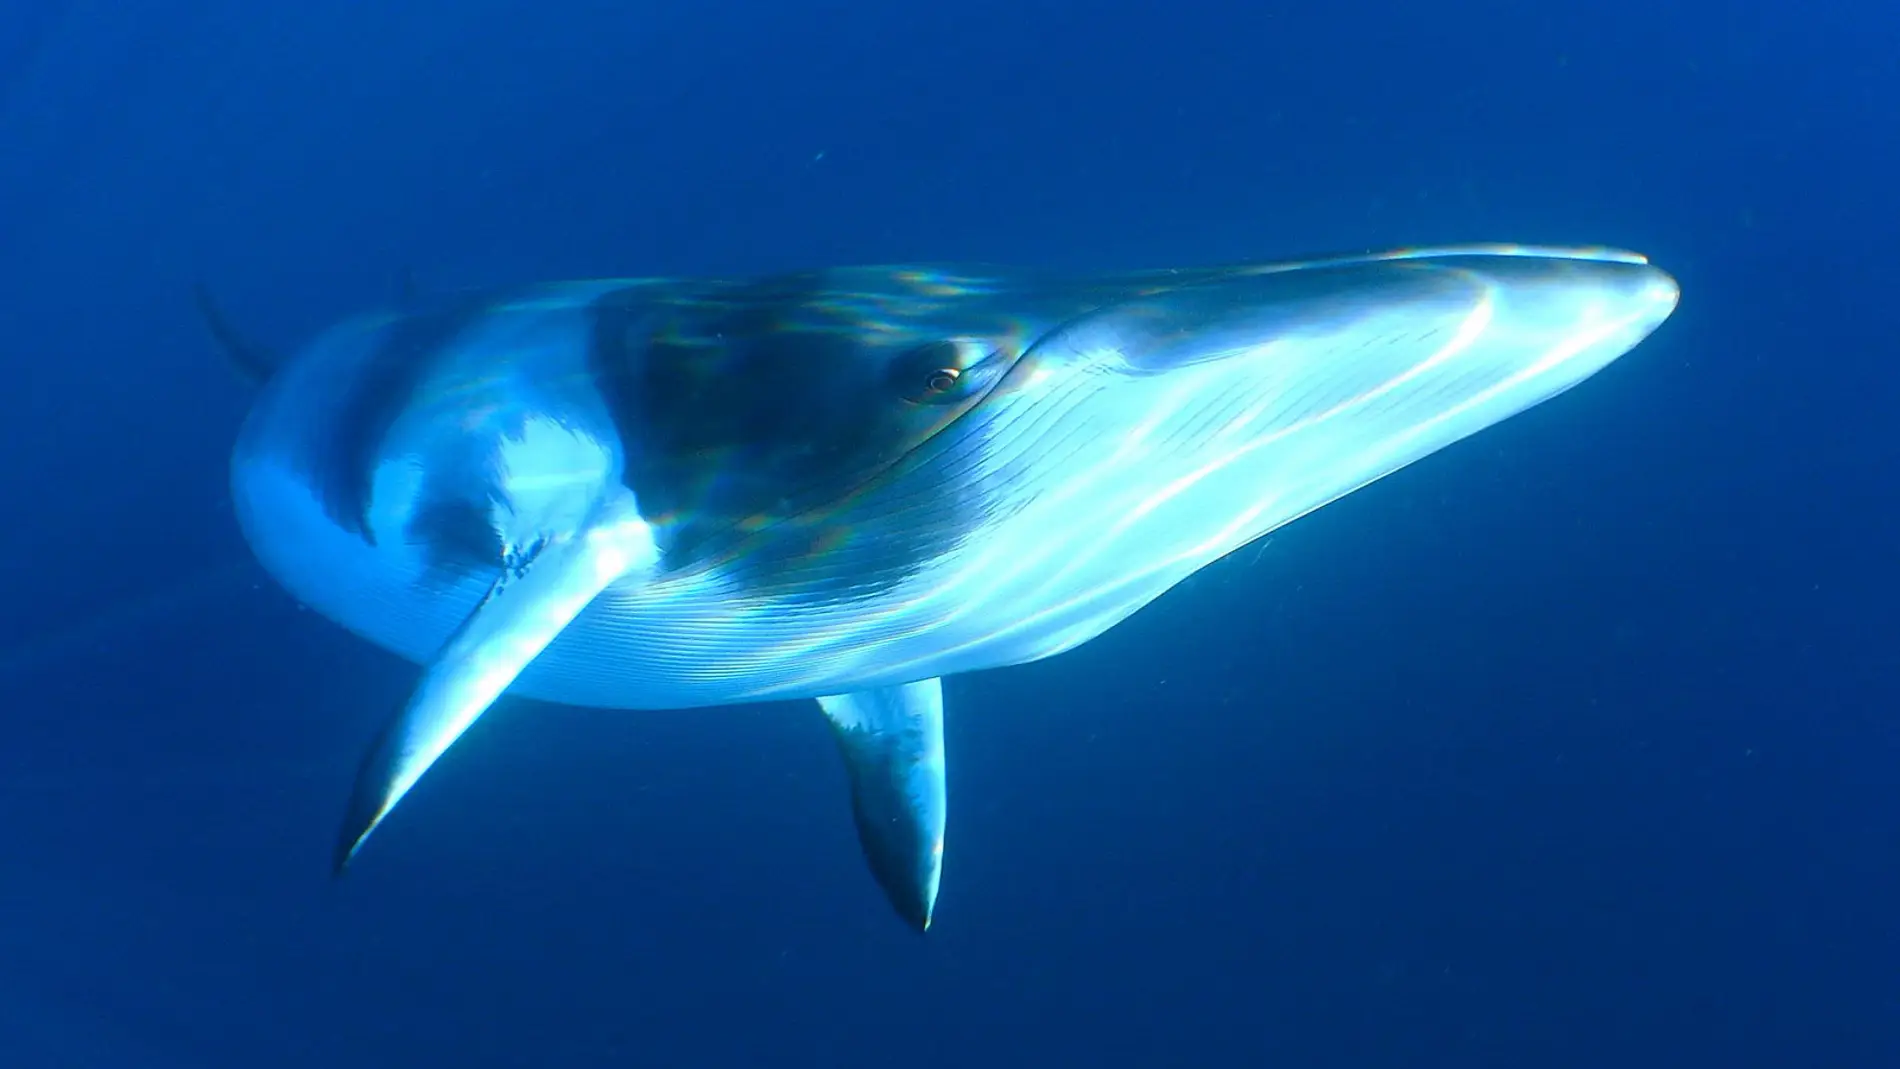 Los científicos creen que el canto podría pertenecer al repertorio de las ballenas enanas como esta